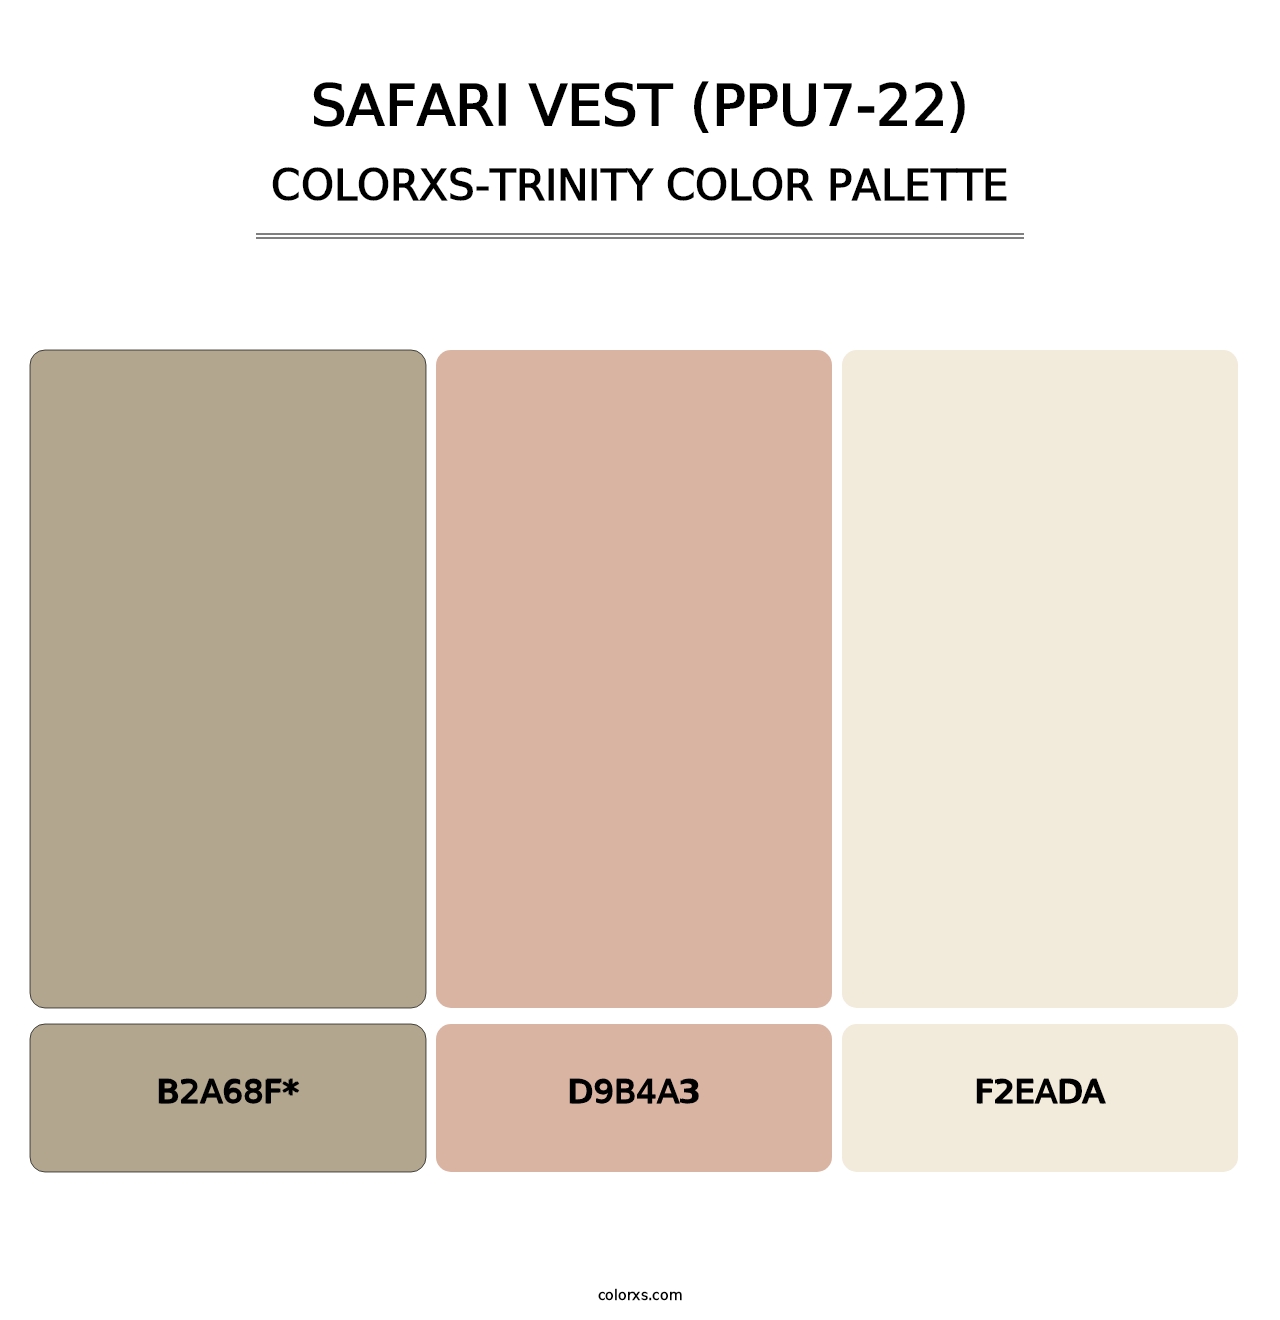 Safari Vest (PPU7-22) - Colorxs Trinity Palette